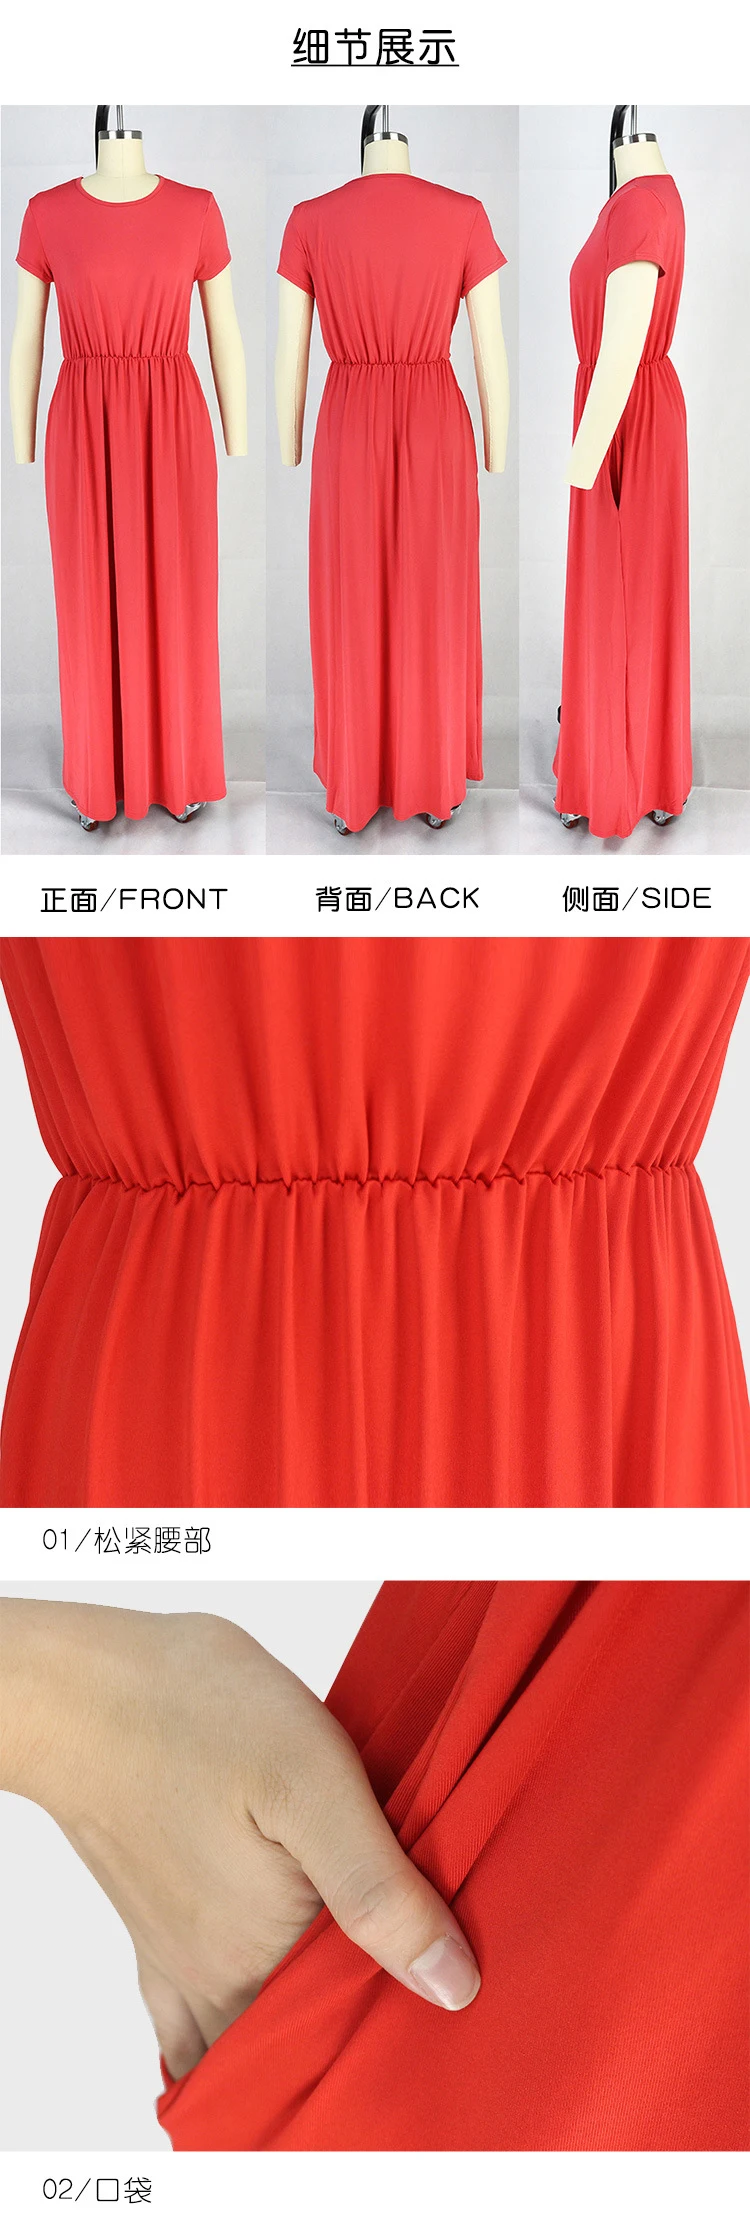 Летнее платье Цвет: черный, синий S-2XL платье с короткими рукавами Новинка весны красный фиолетовый розовый длинный тонкий плиссированное платье Feminina CX744